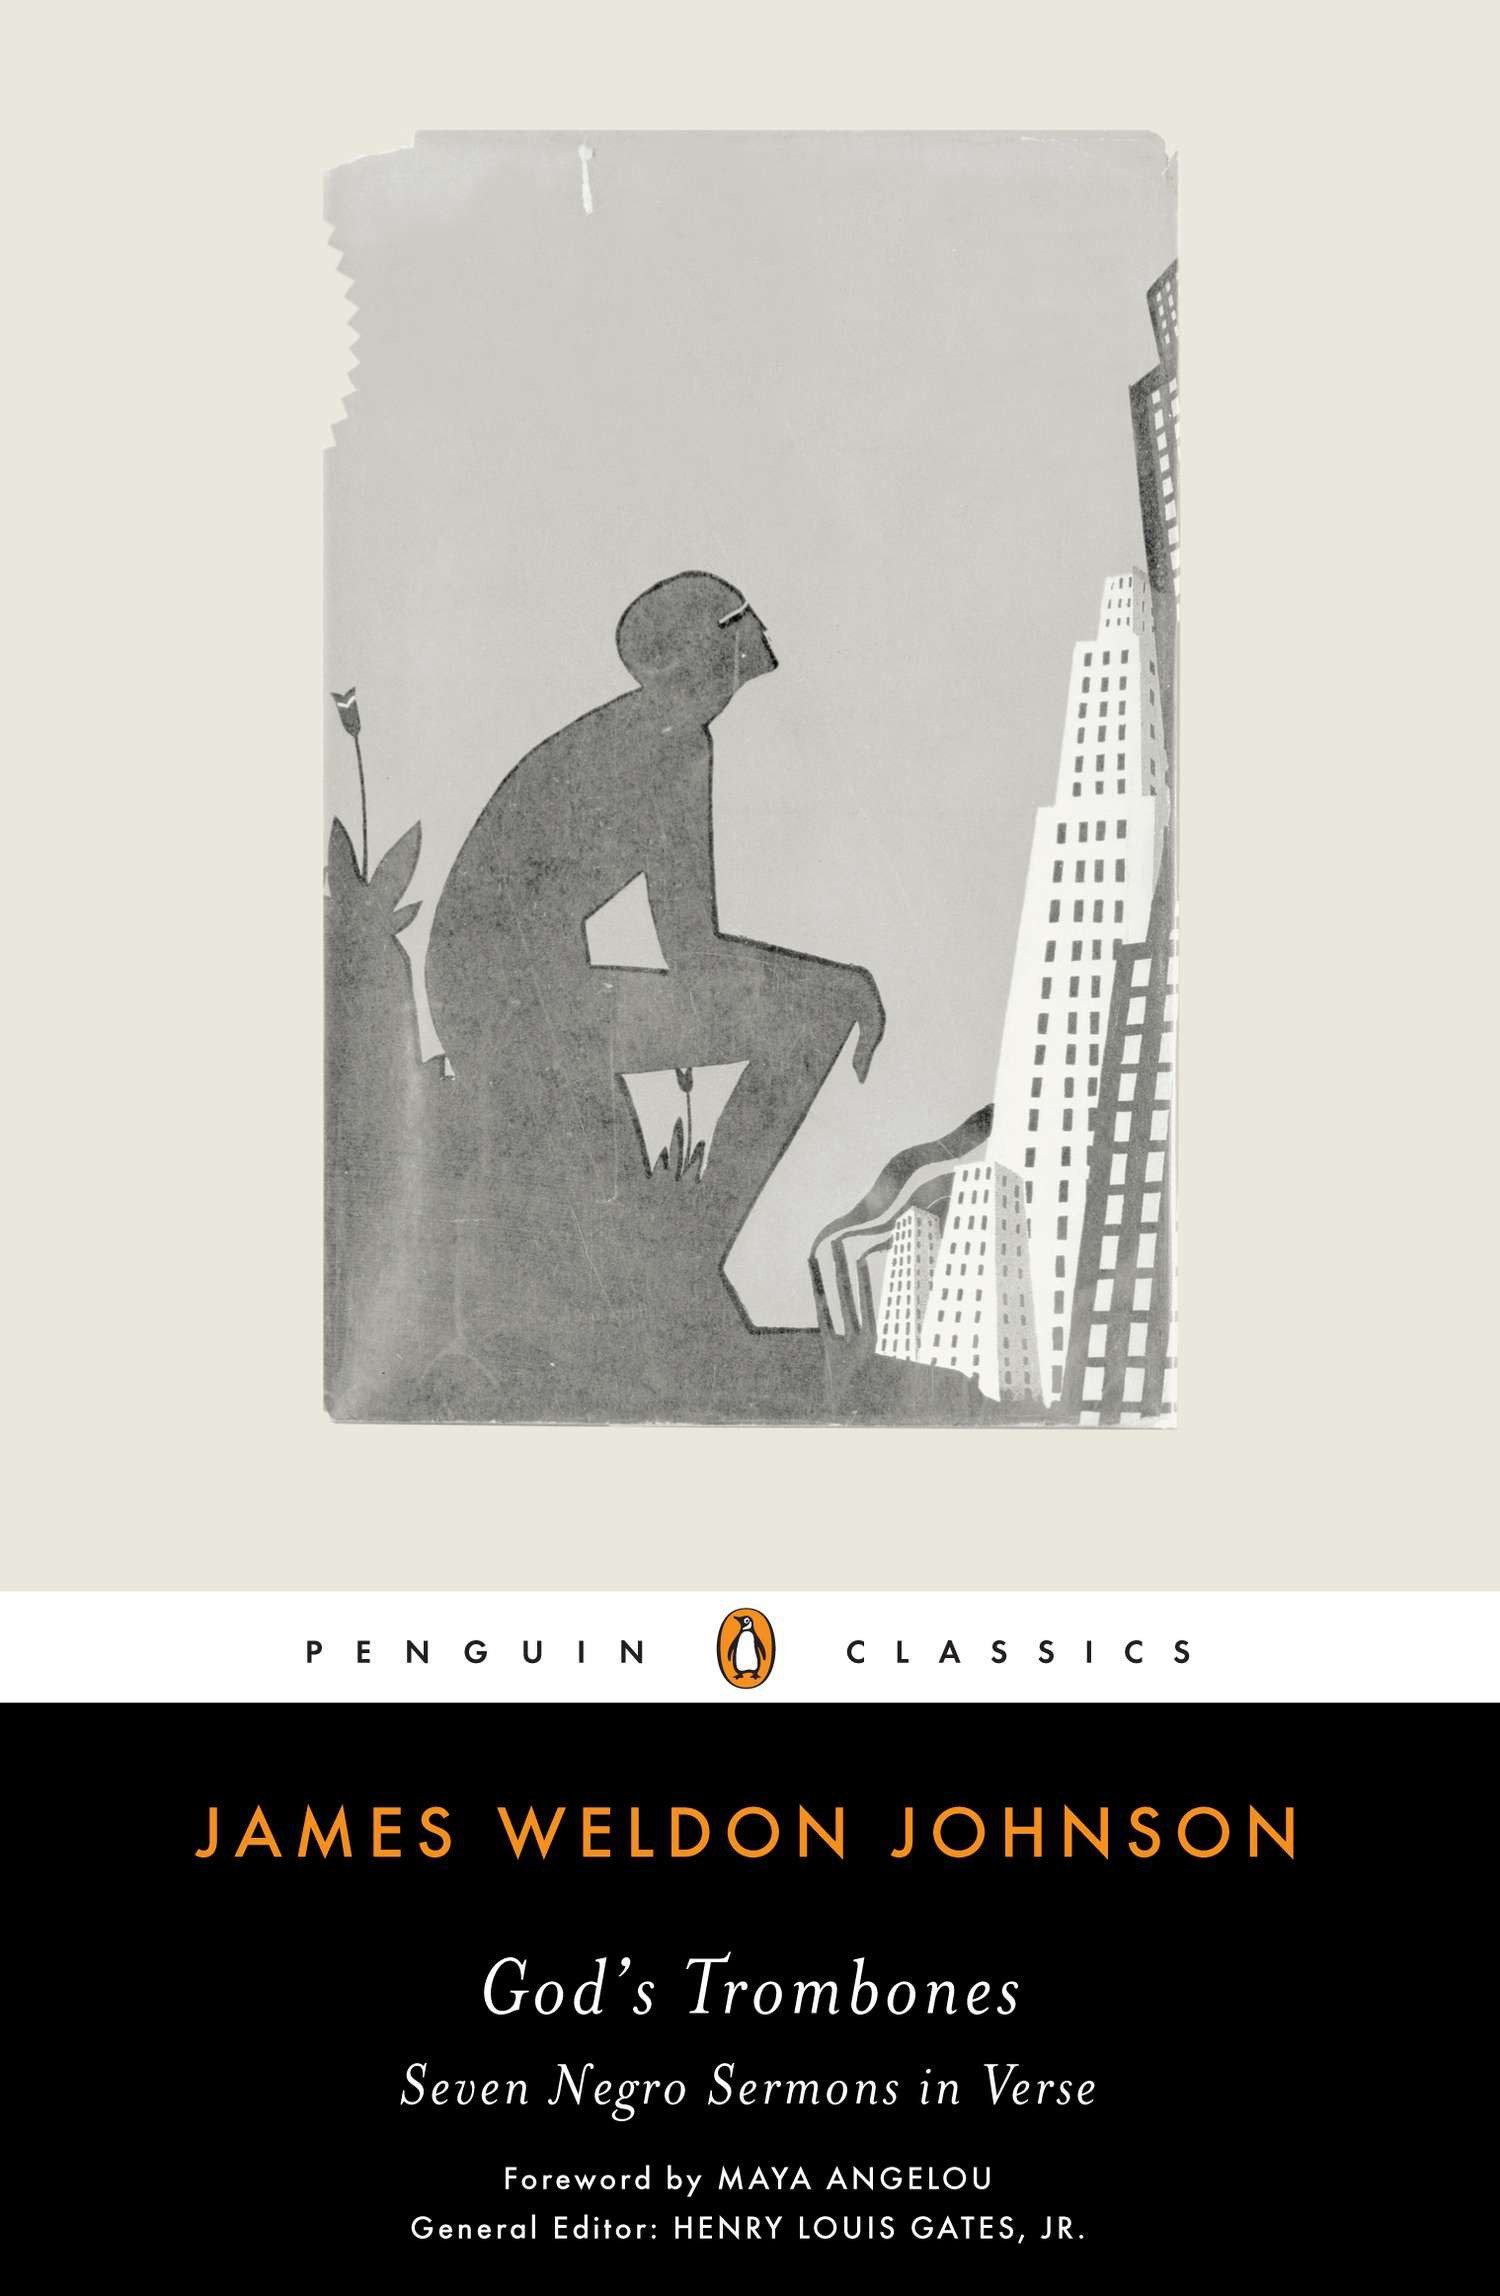 James Weldon Johnson: God's trombones (2008, Penguin Books)